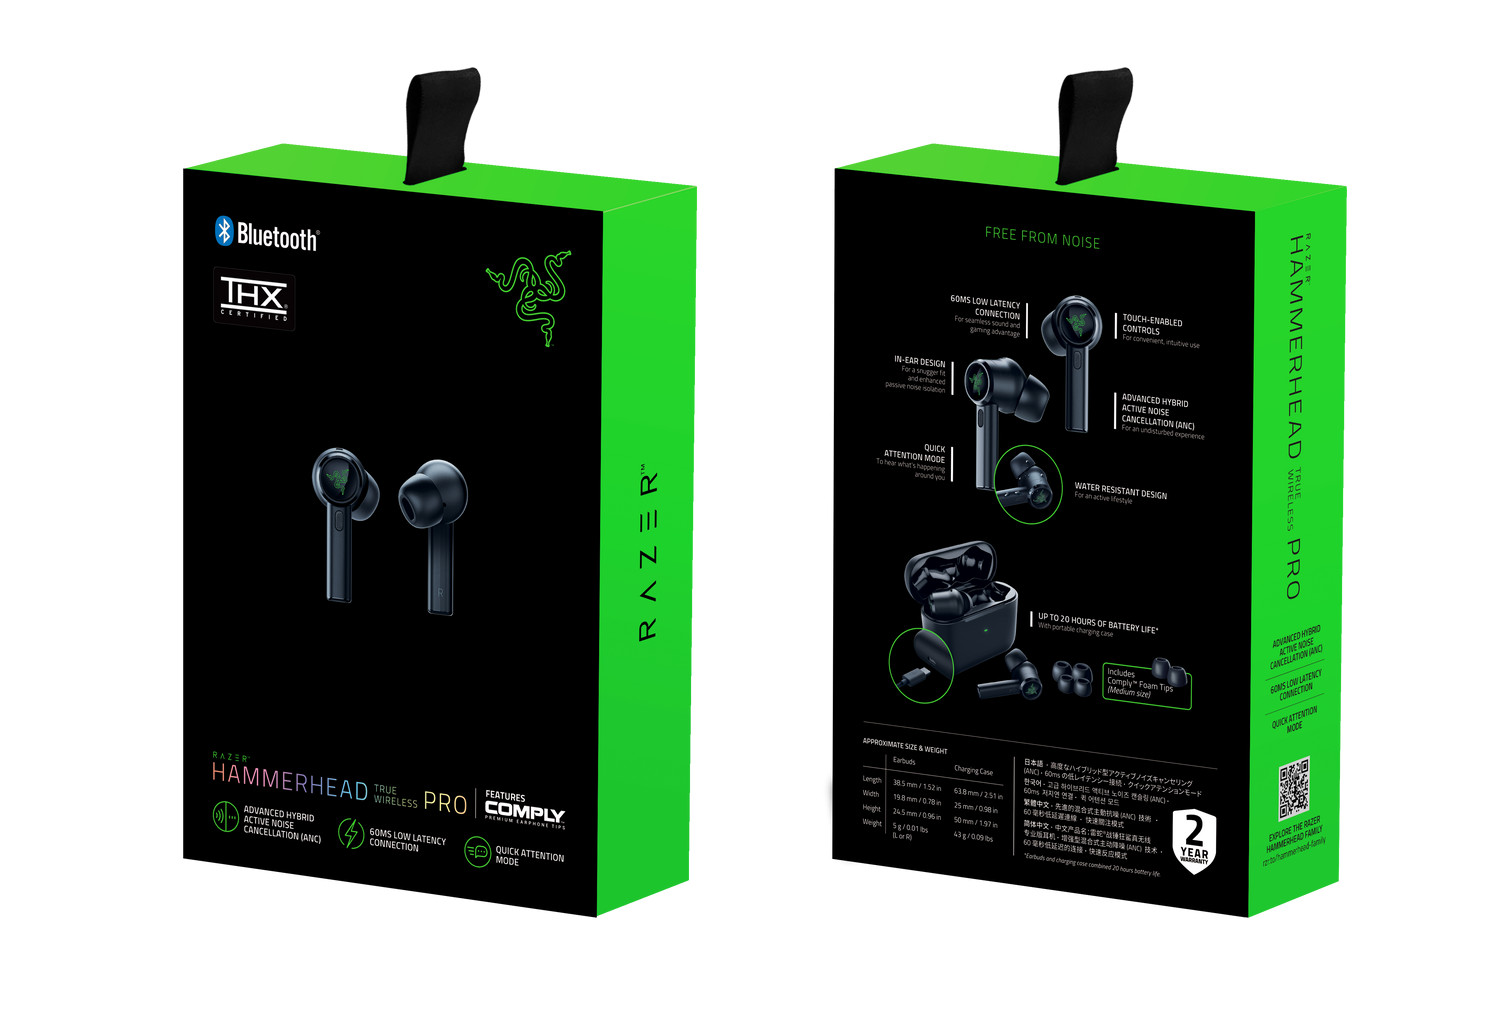 Tai nghe Razer Hammerhead Pro V2 – Analog Gaming & Music In-Ear Headset - AP Packaging_RZ04-01730100-R3A1 - Hàng chính hãng